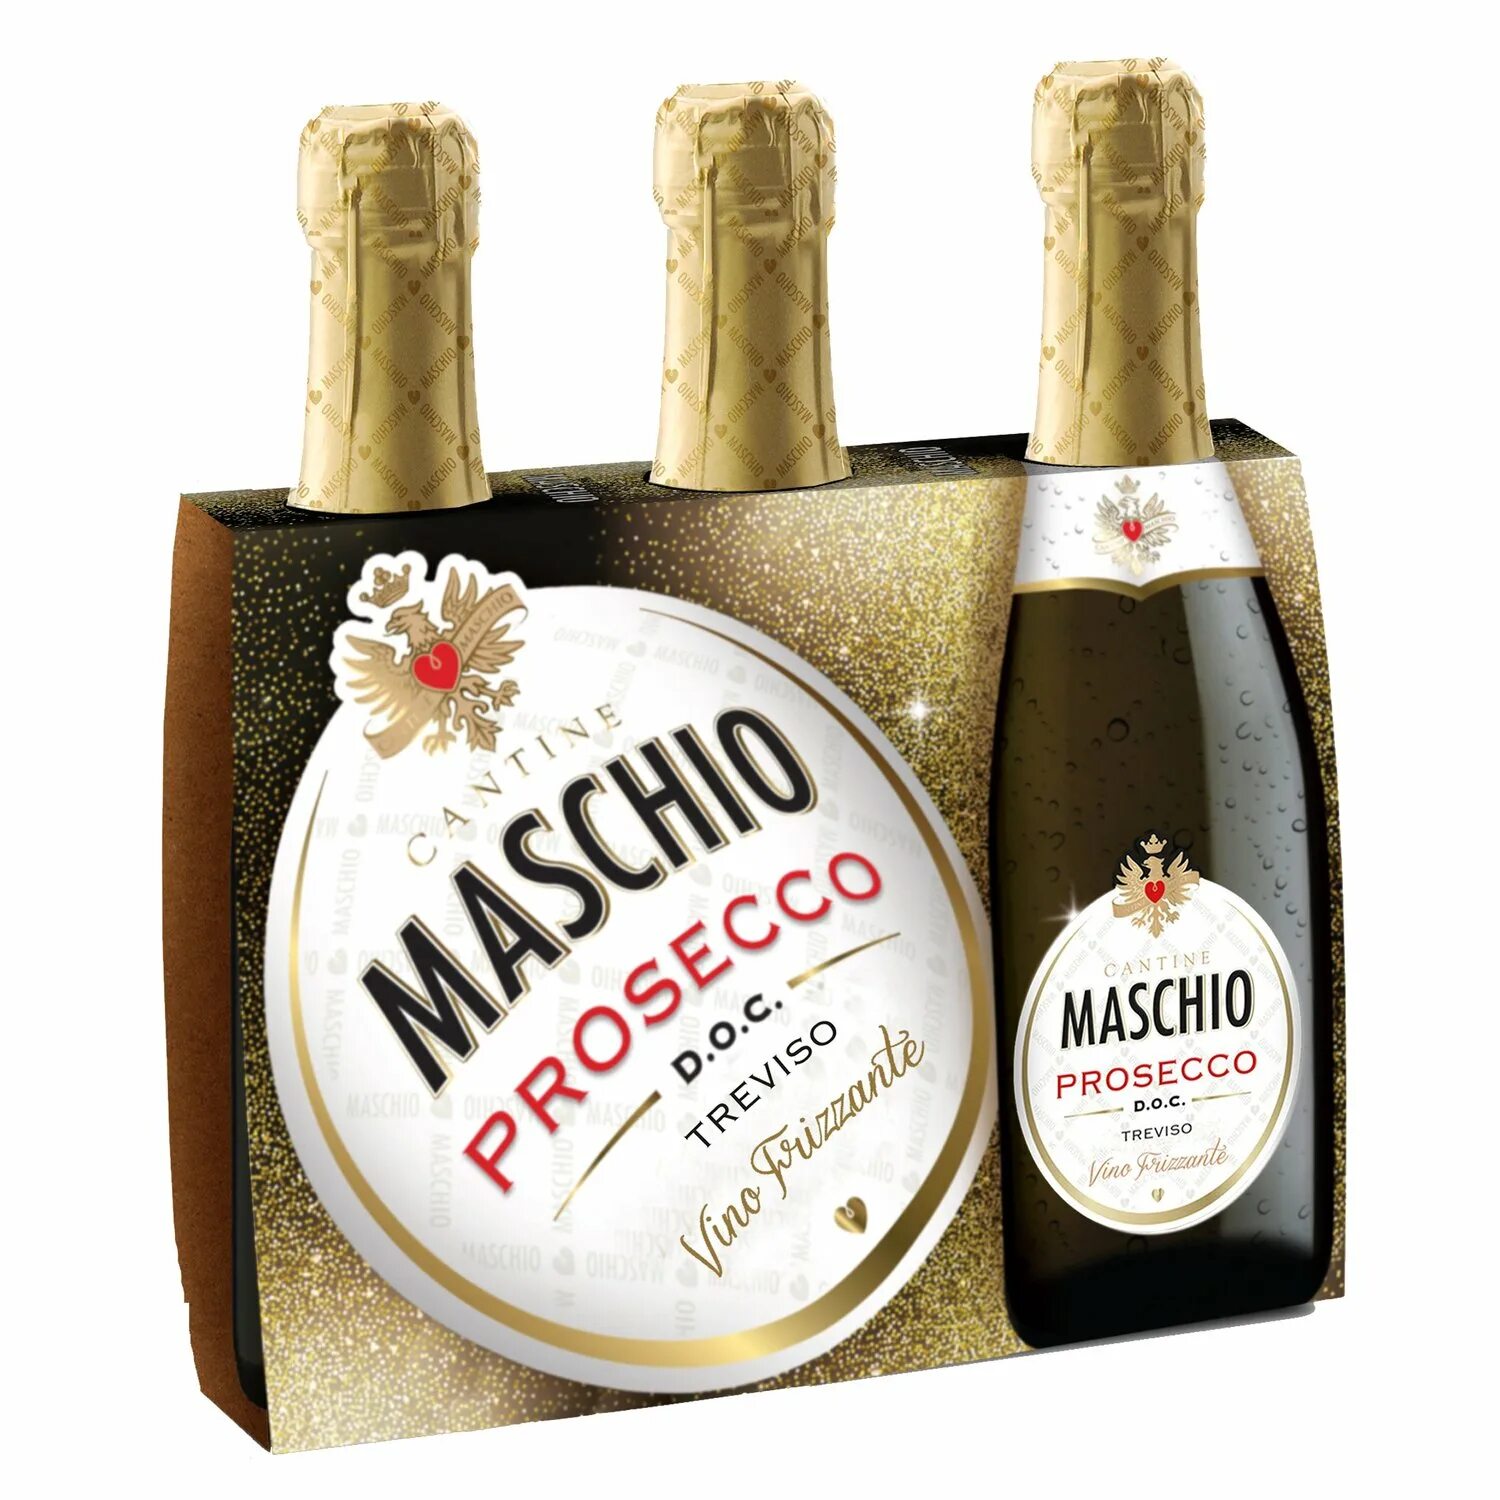 Maschio prosecco. Маскио Просекко Тревизо. Maschio Prosecco шампанское Treviso. Маскио Просекко Тревизо Экстра драй. Маскио Просекко этикетка.